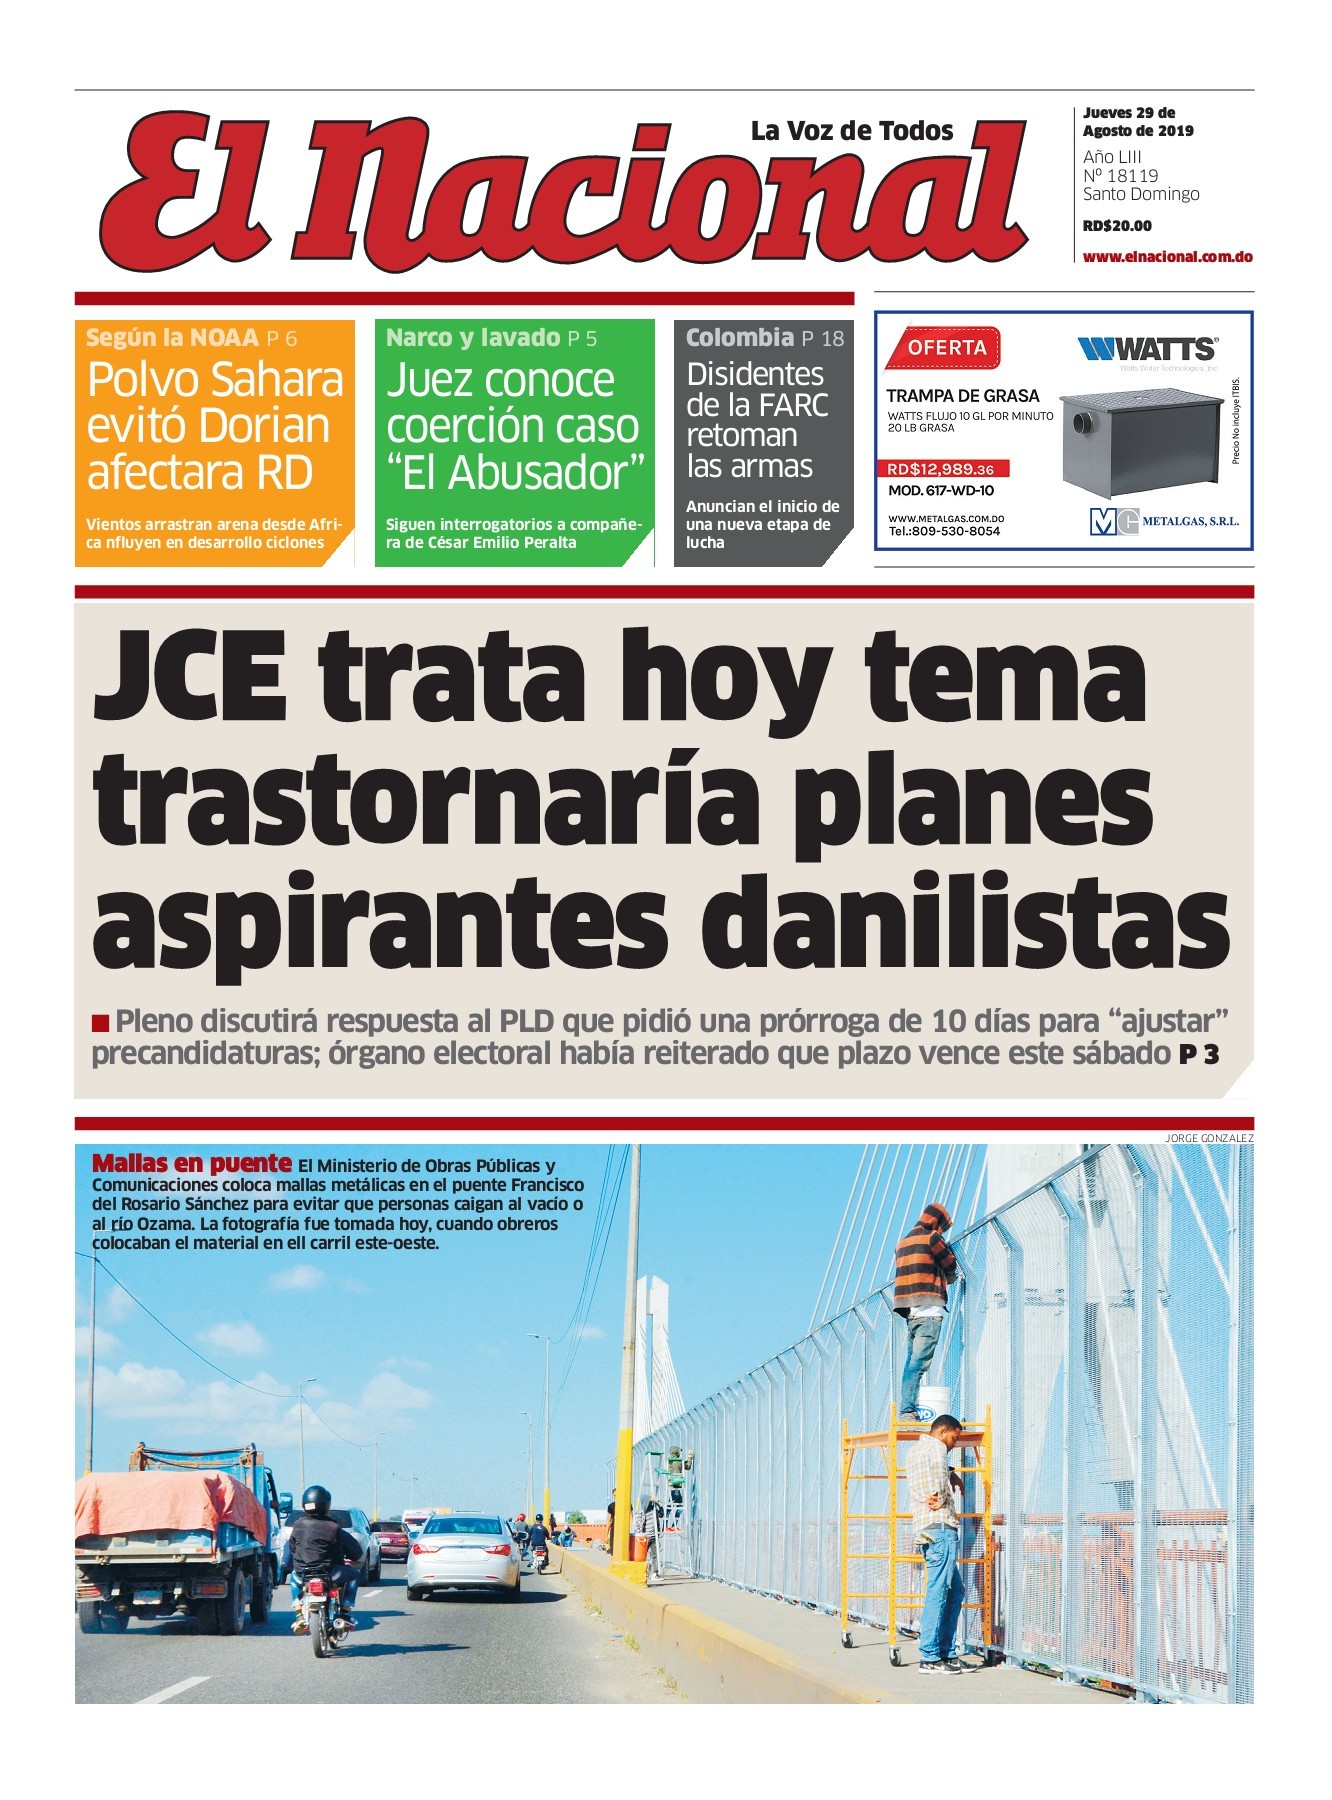 Portada Periódico El Nacional, Jueves 29 de Agosto, 2019